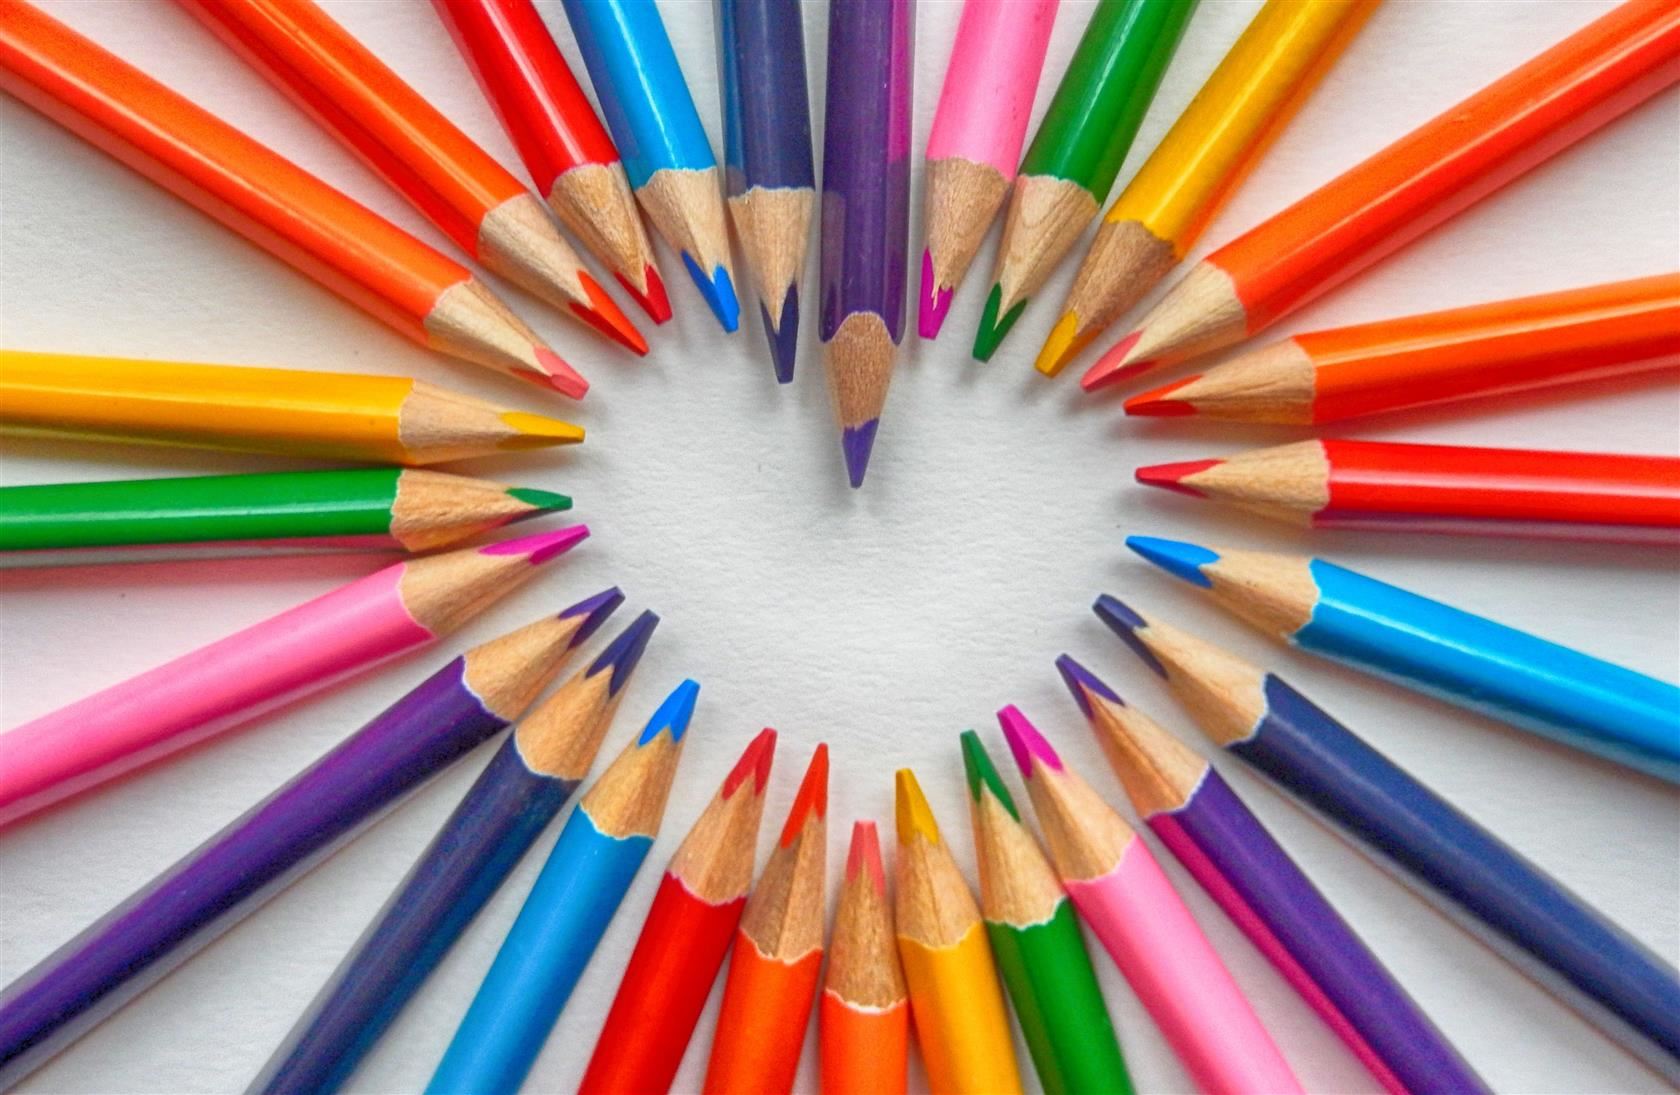  color pencils making a heart